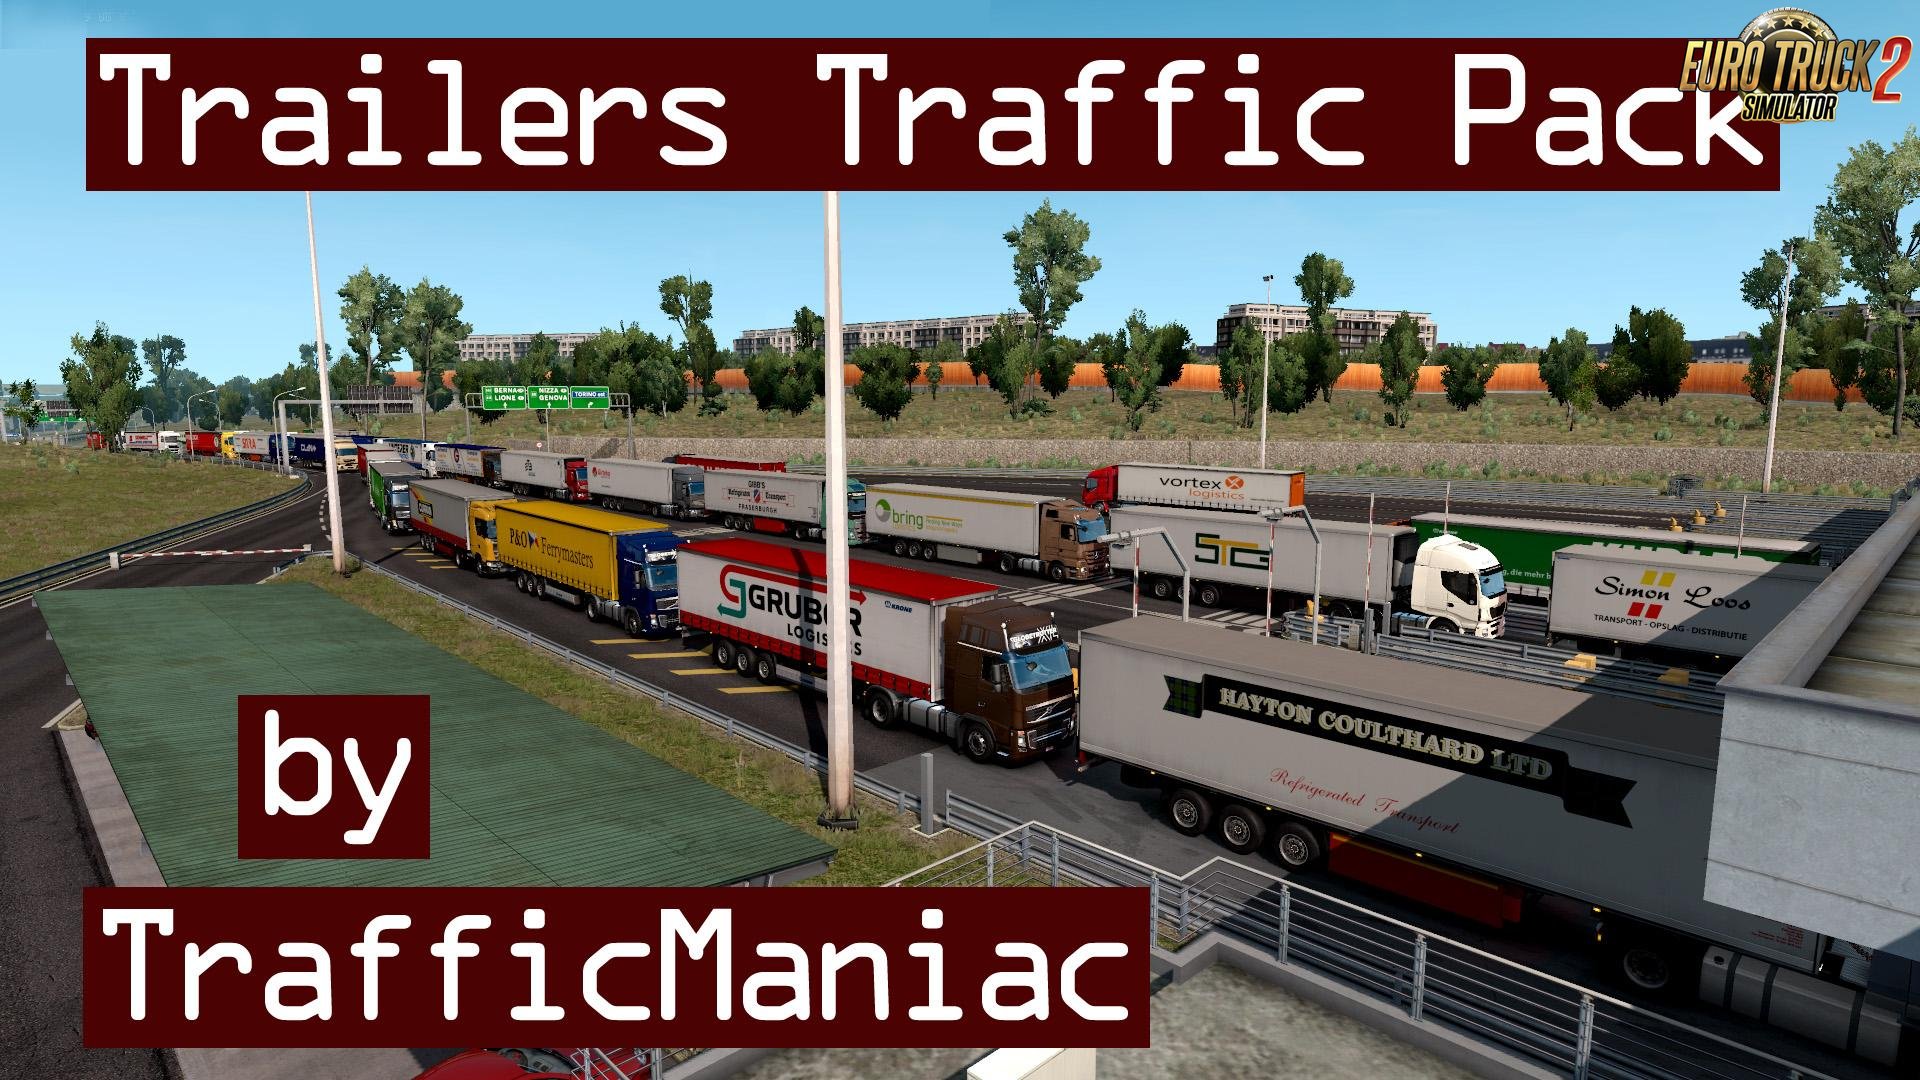 Trailers Traffic Pack v3.0 by TrafficManiac